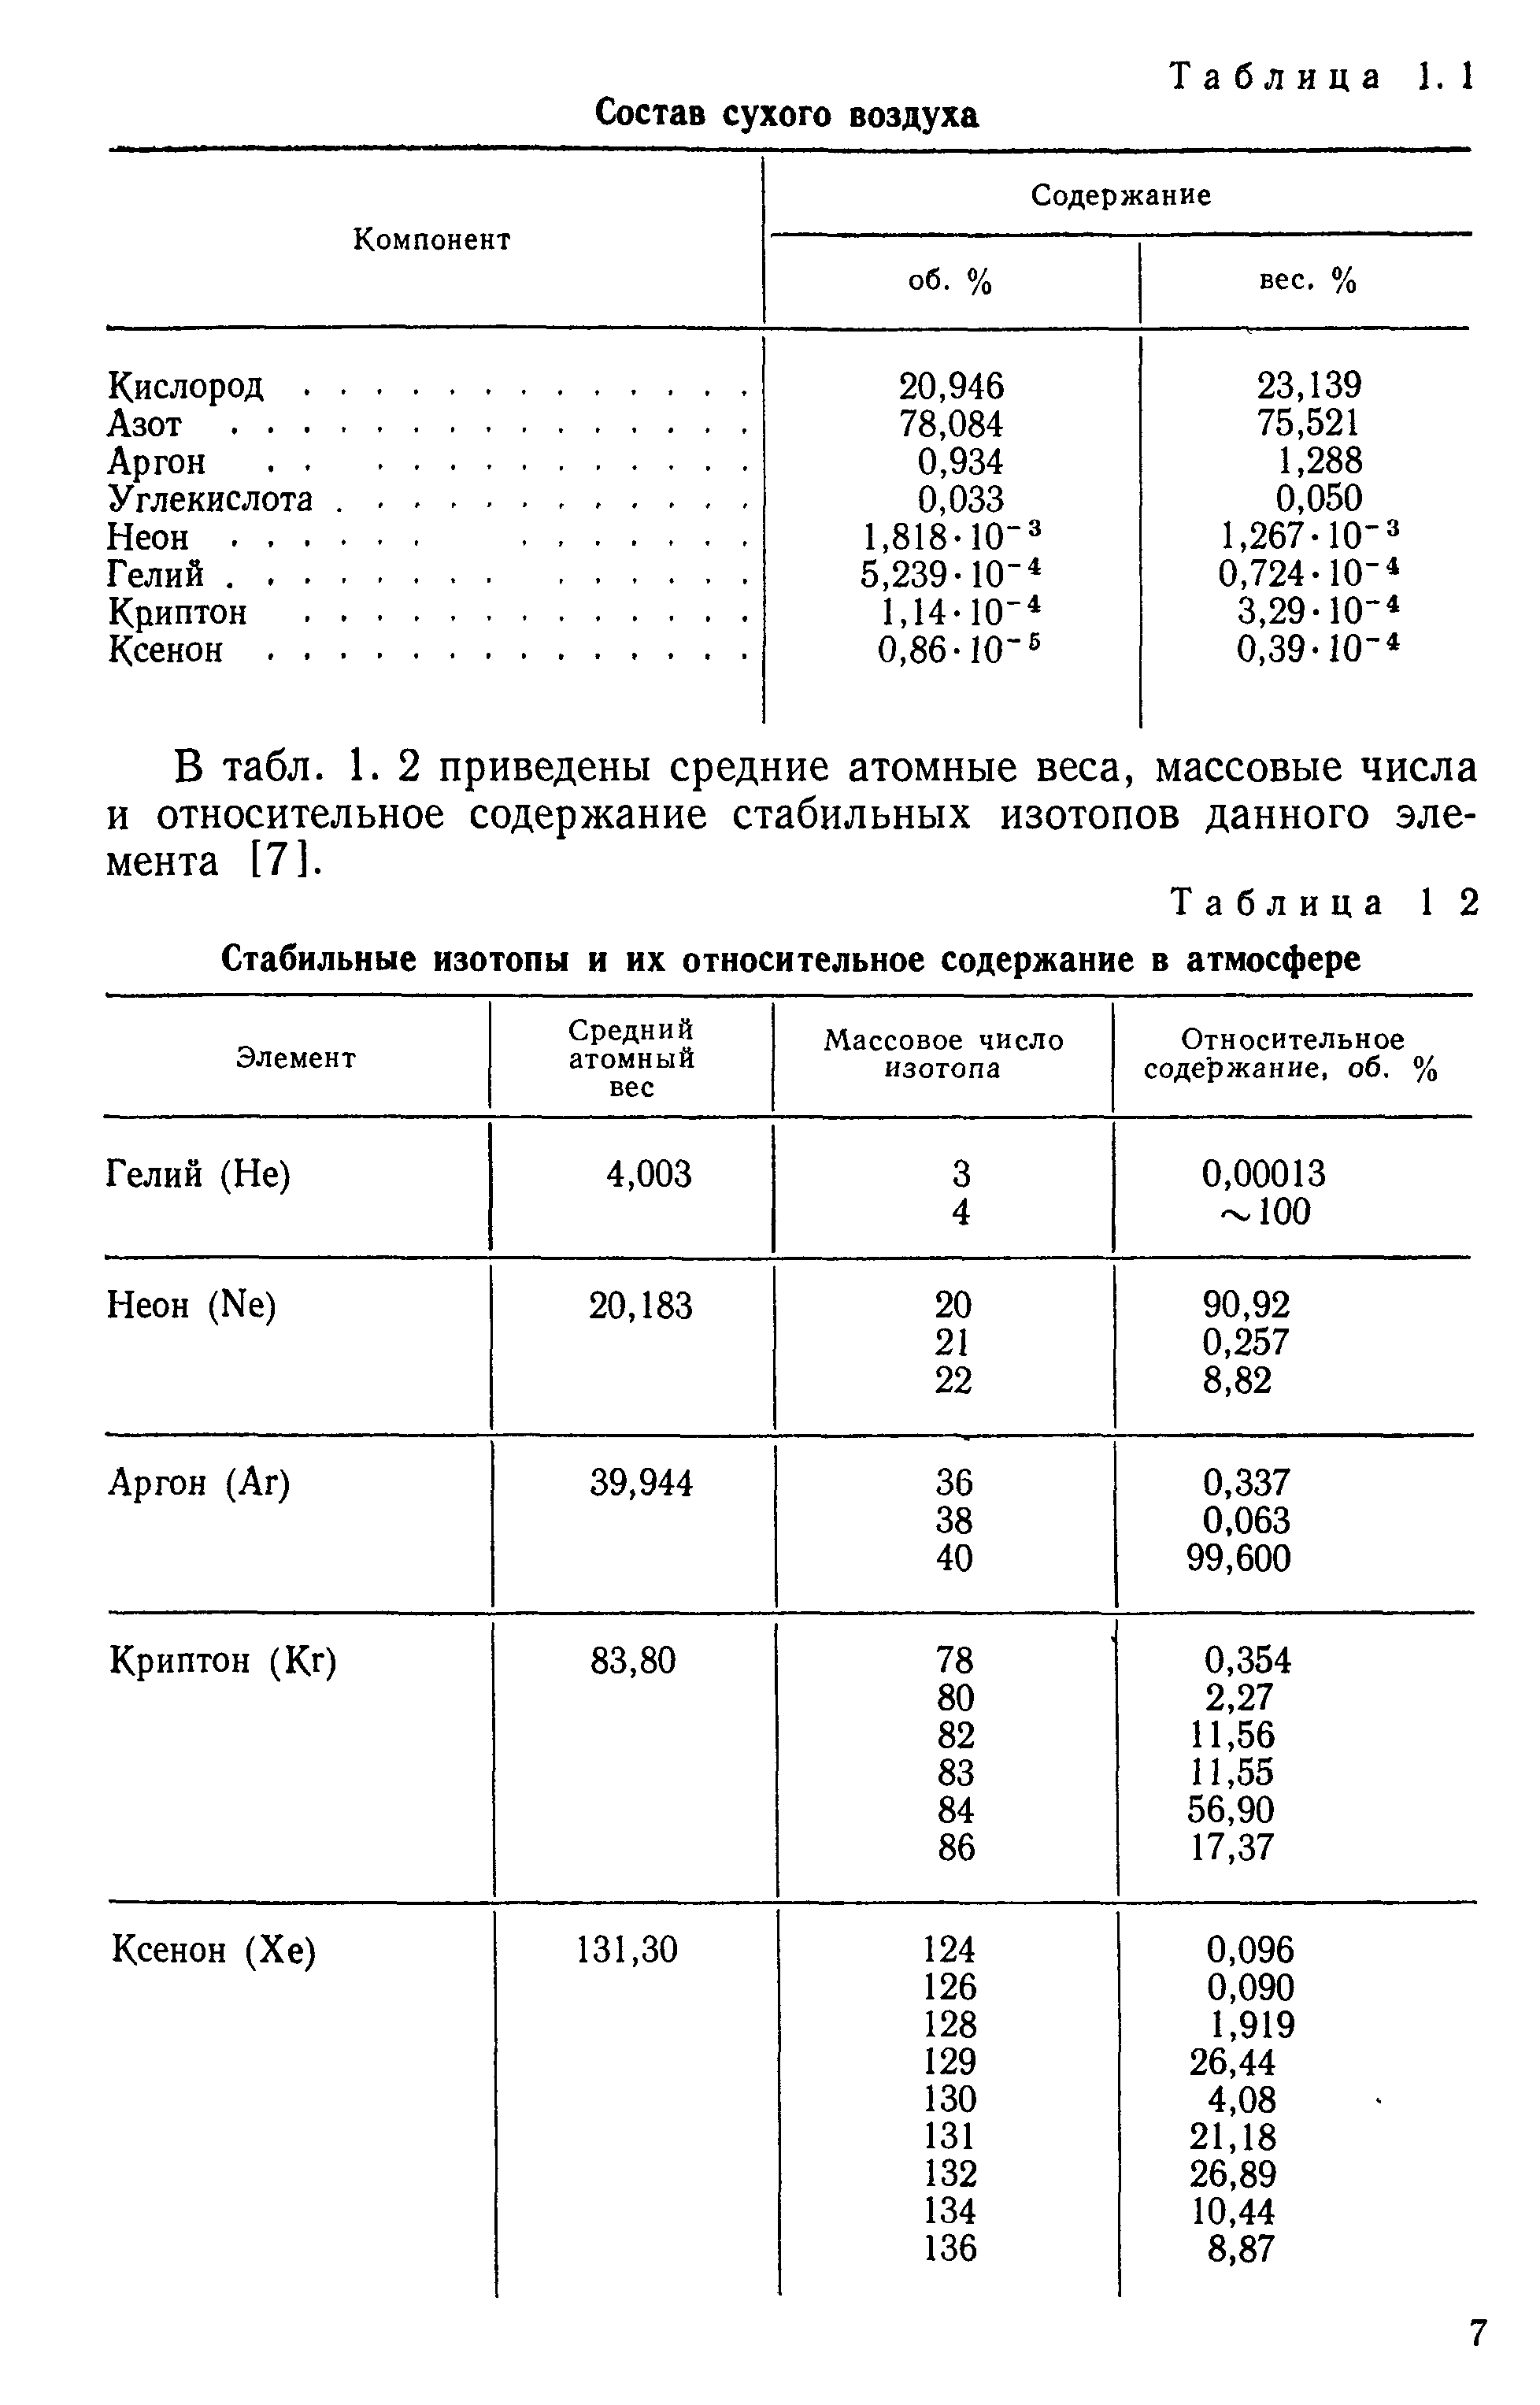 В табл. 1. 2 приведены средние атомные веса, массовые числа и относительное содержание стабильных изотопов данного элемента [7].